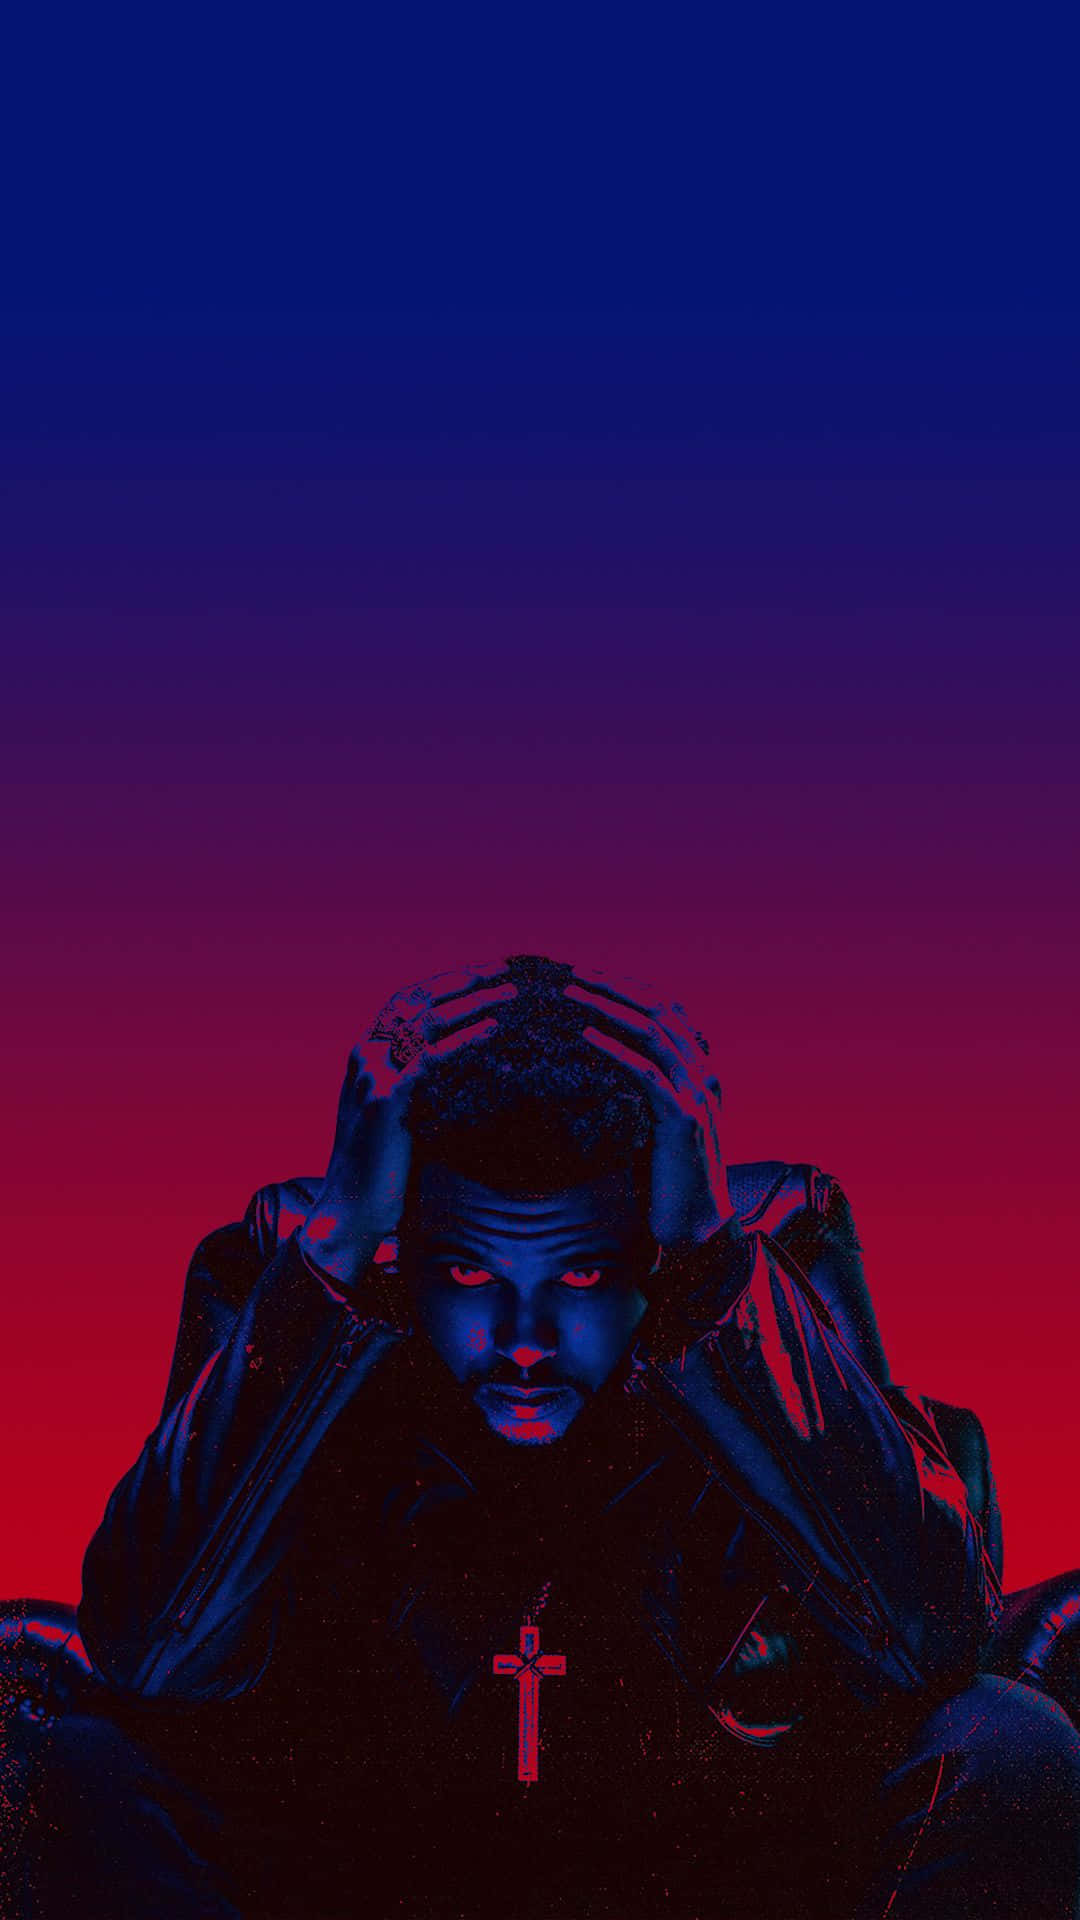 Wallpaperveckans Gradient Blur Iphone-bakgrundsbild Med The Weeknd. Wallpaper